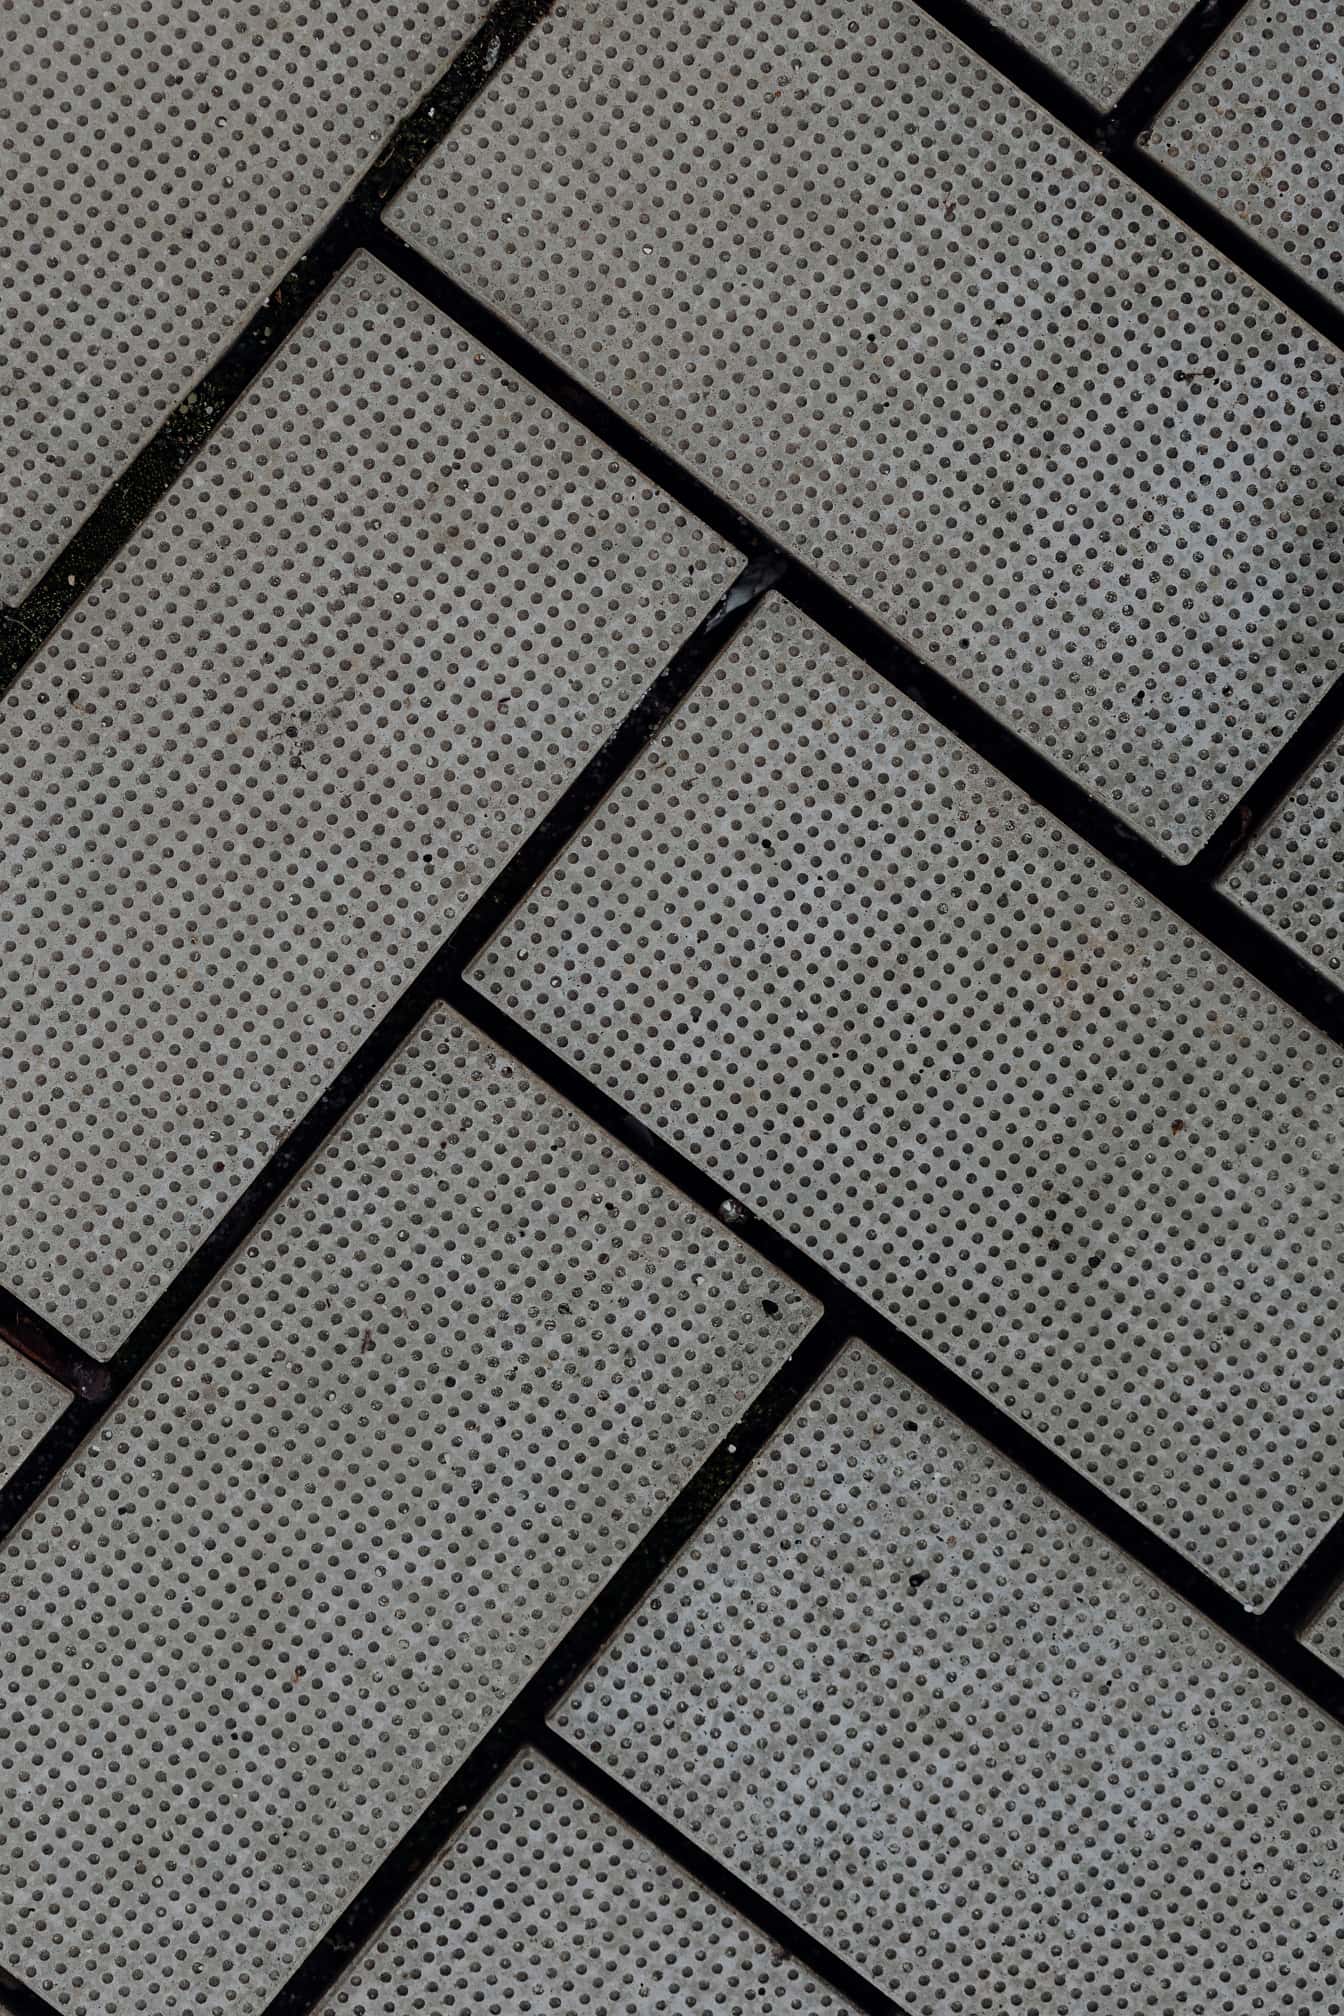 Tijolos de concreto com padrão de espinha de arenque e argamassa preta